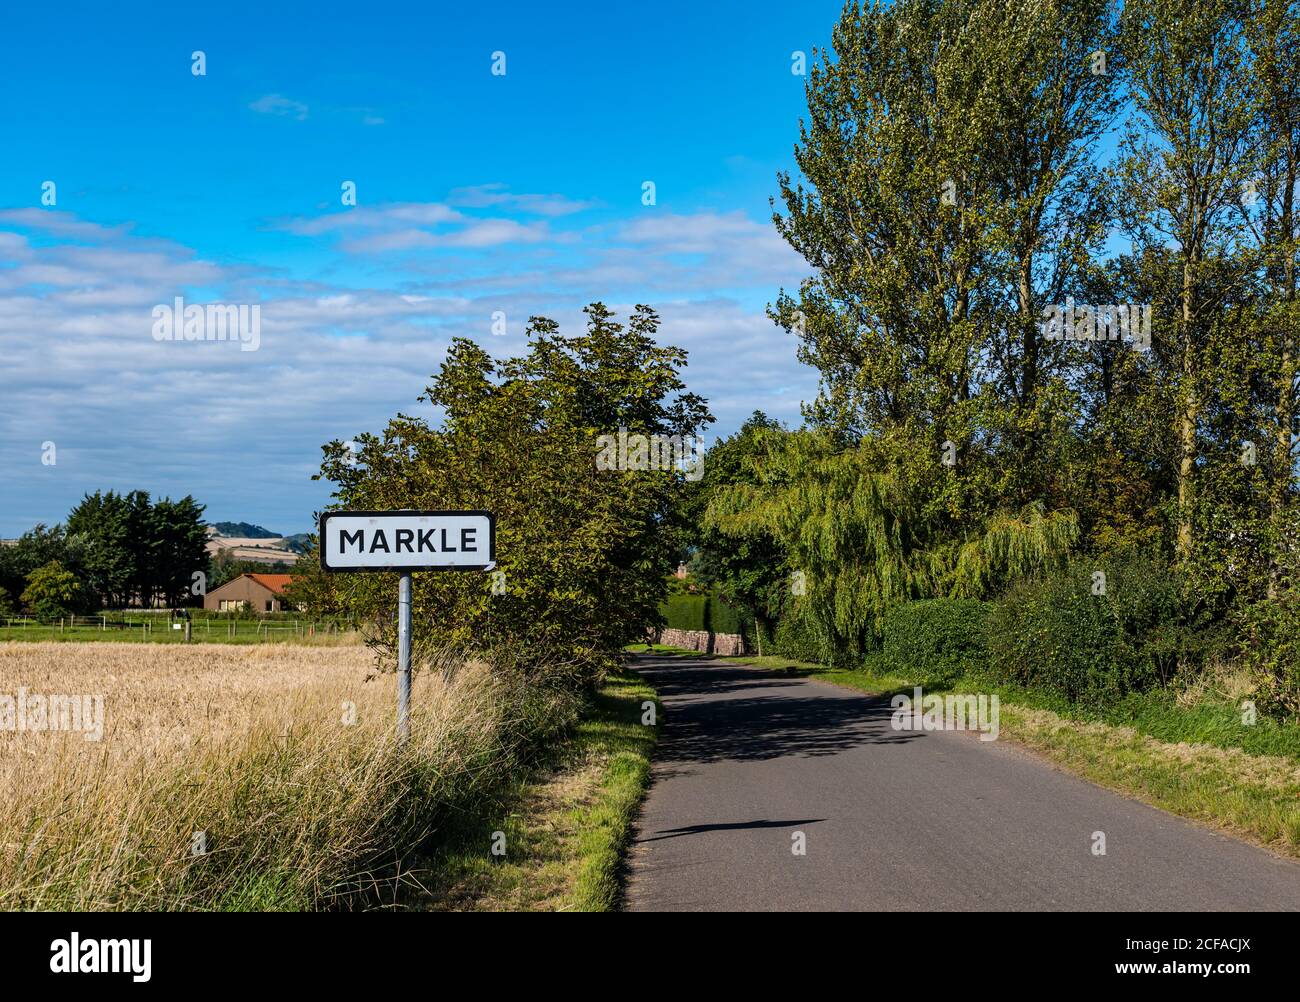 Route de campagne calme et vide avec panneau de village, Markle, East Lothian, Écosse, Royaume-Uni Banque D'Images